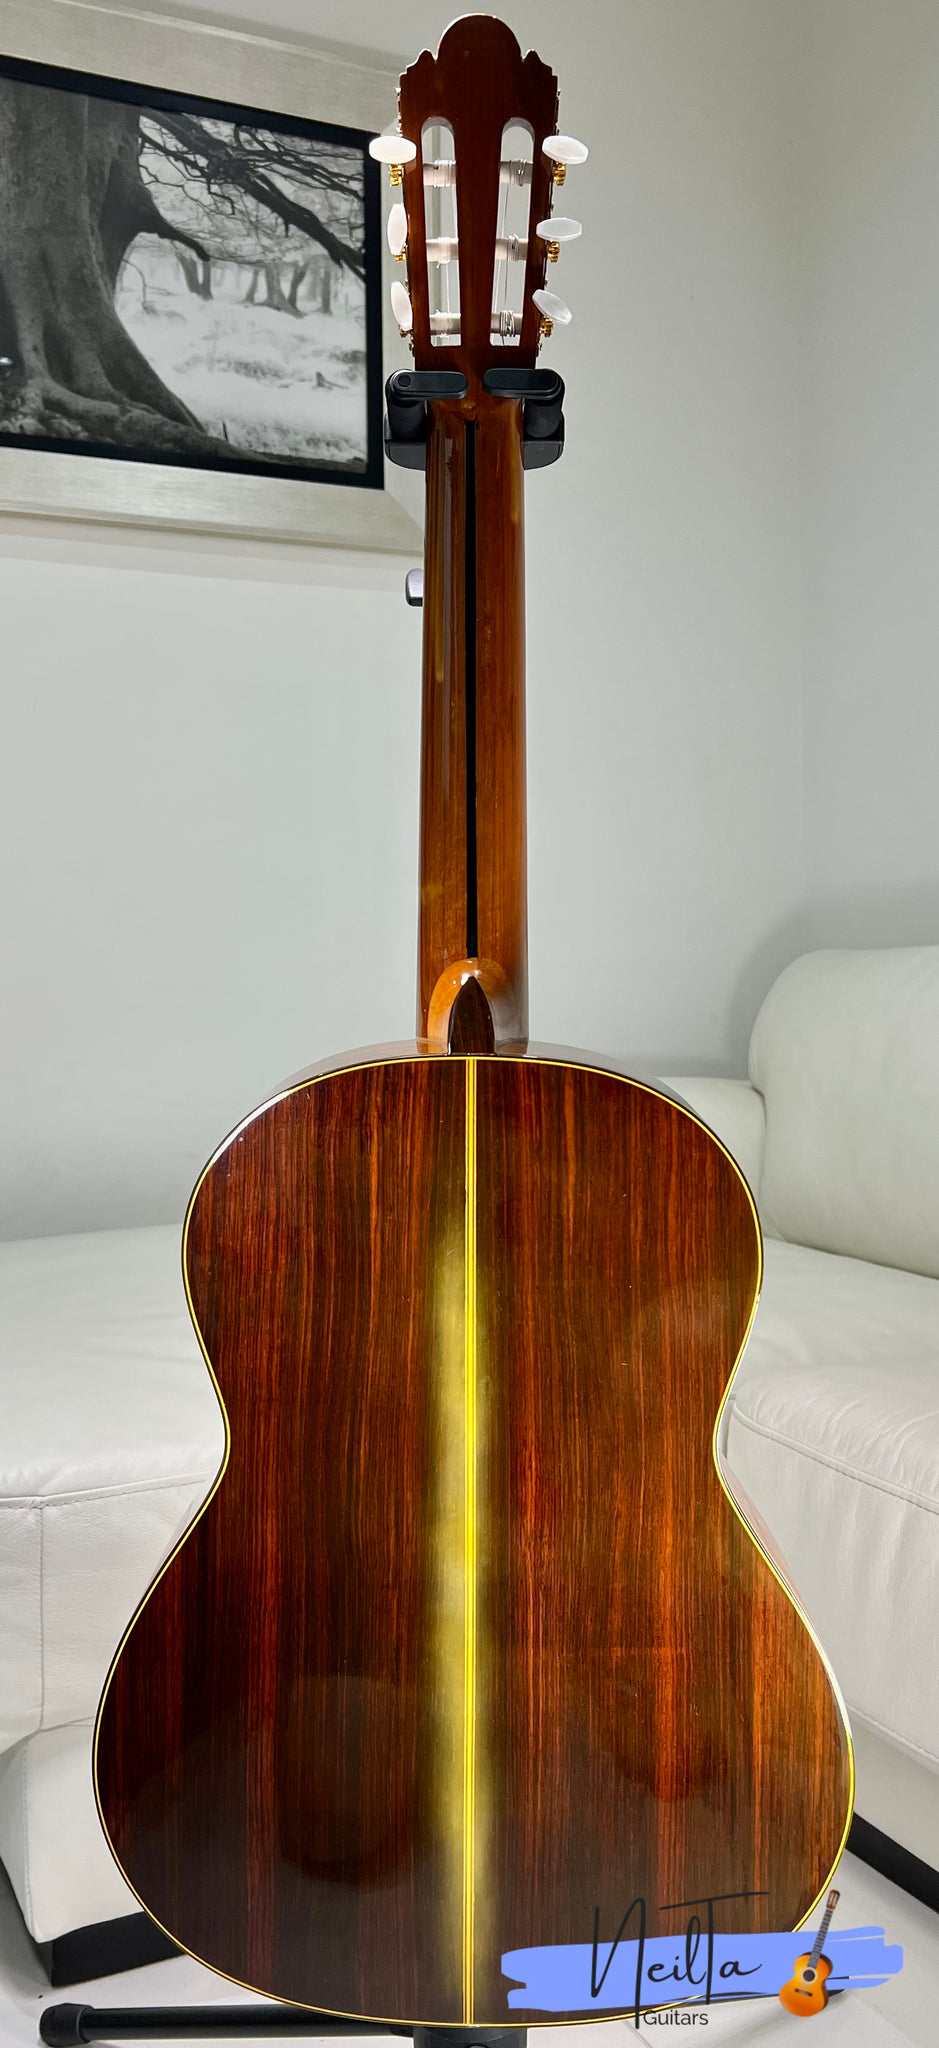 Shinano SC-20 (1972) Handmade Concert Classical Guitar – Neil Ta Music